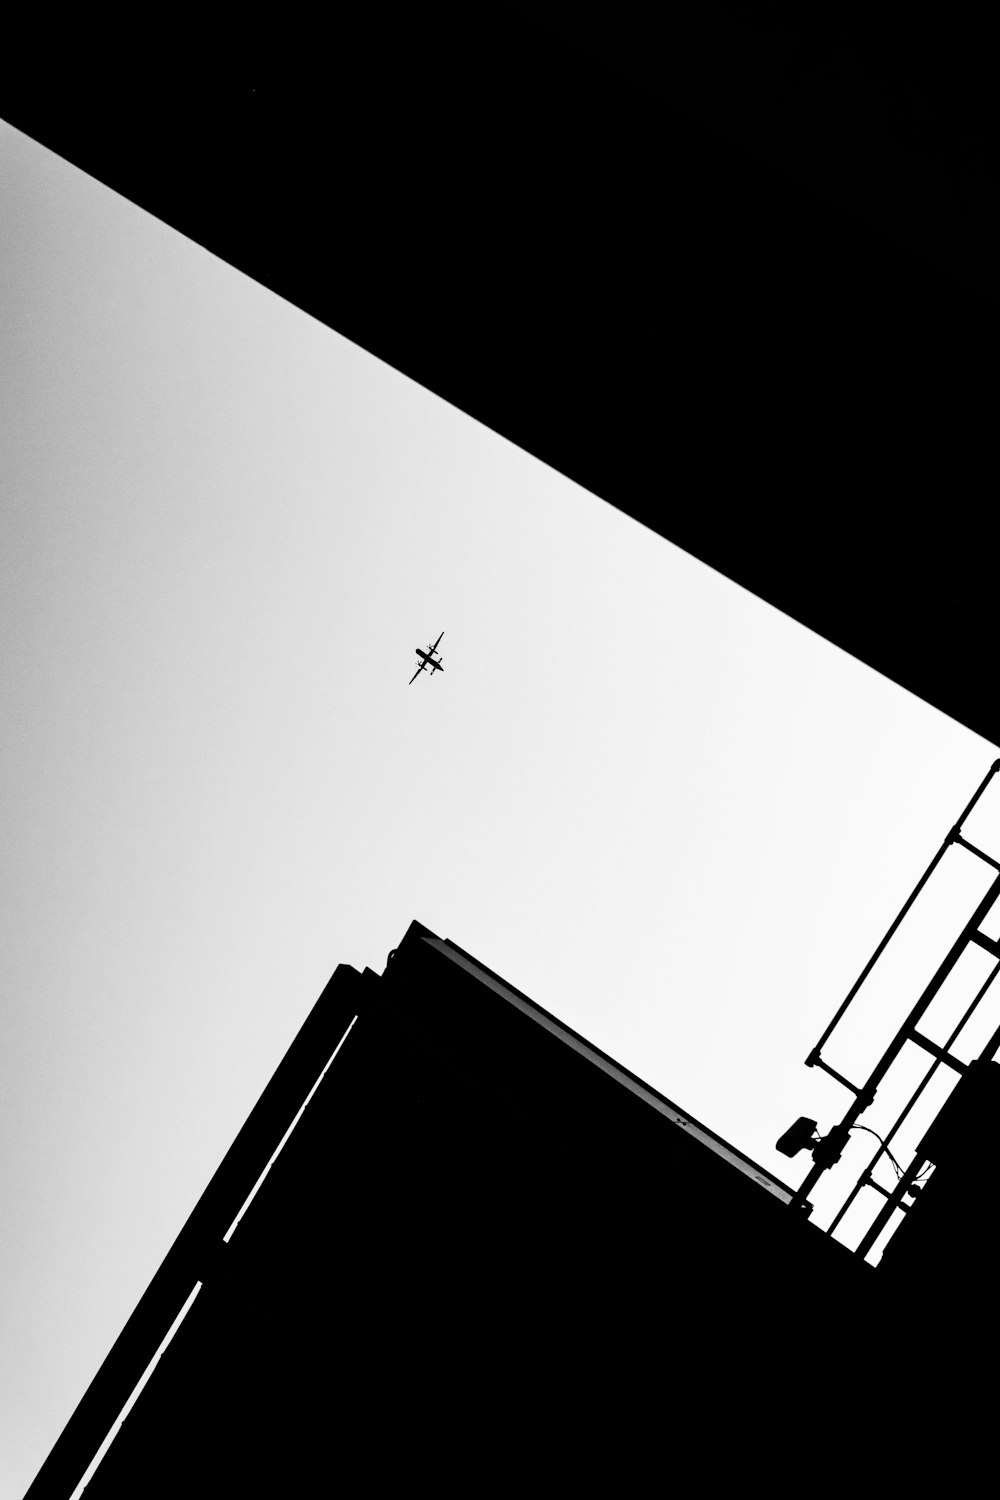 하늘을 나는 비행기의 흑백 사진